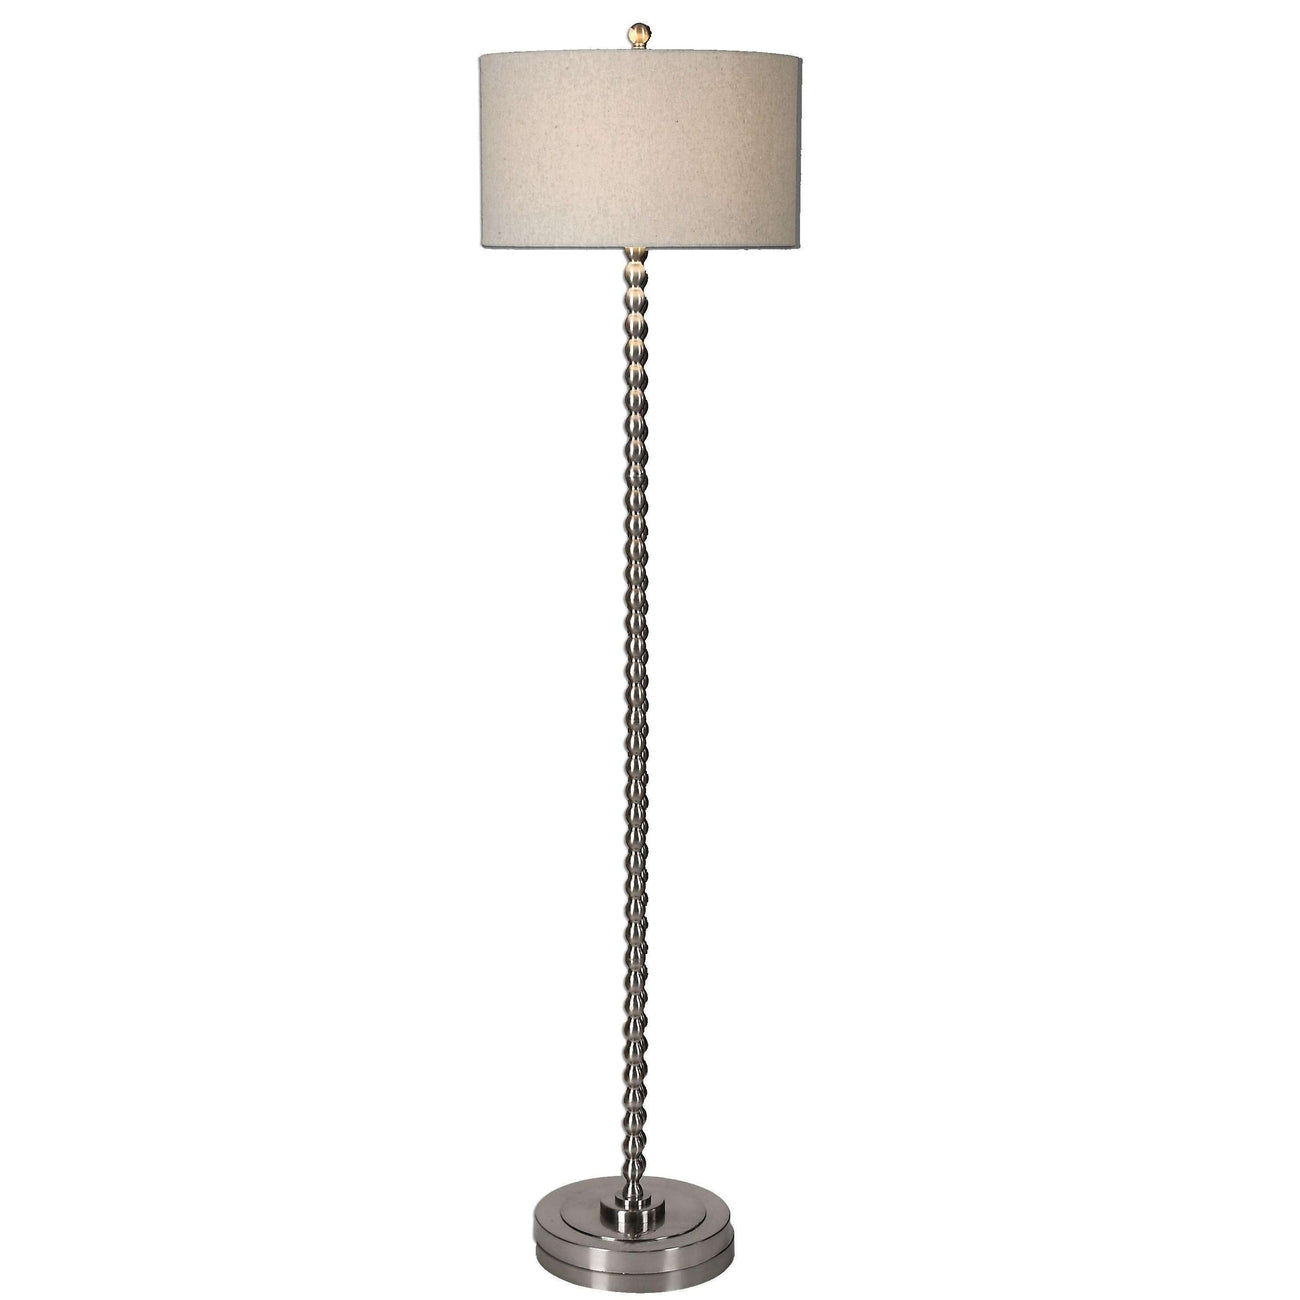 Sherise Beaded Nickel Floor Lamp-Uttermost-UTTM-28640-1-Floor Lamps-1-France and Son